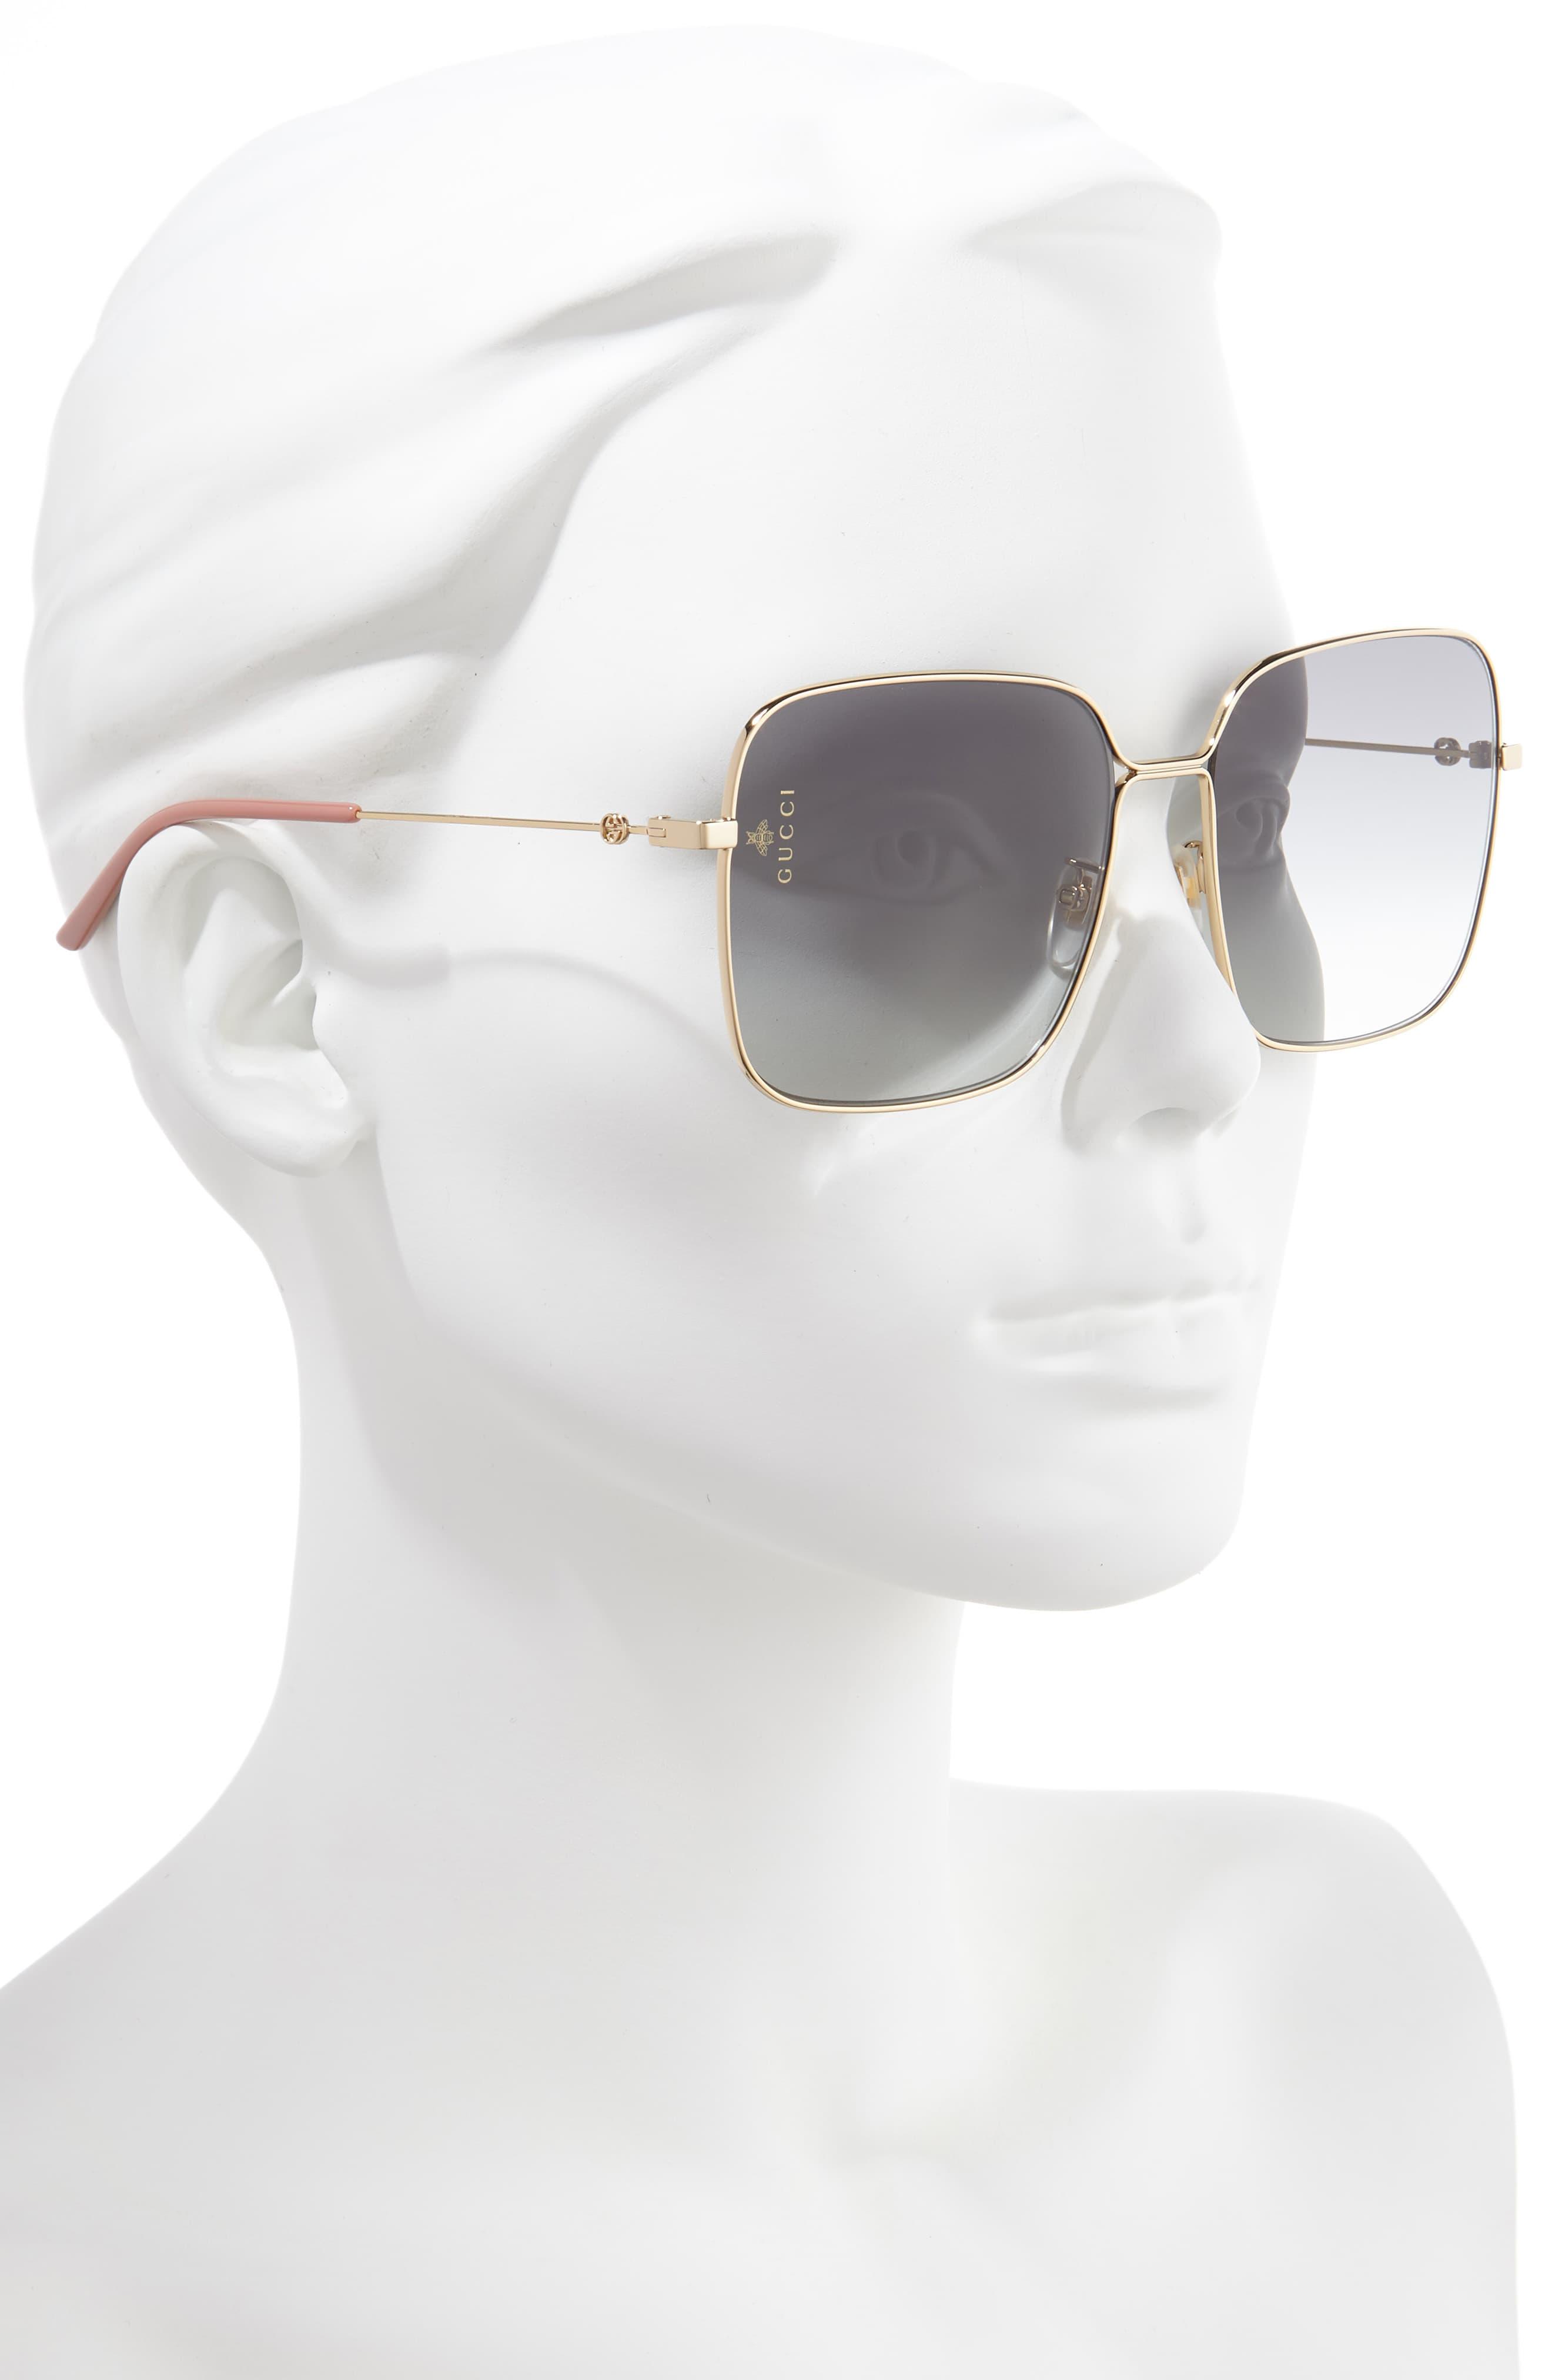 gucci 60mm oversize square sunglasses